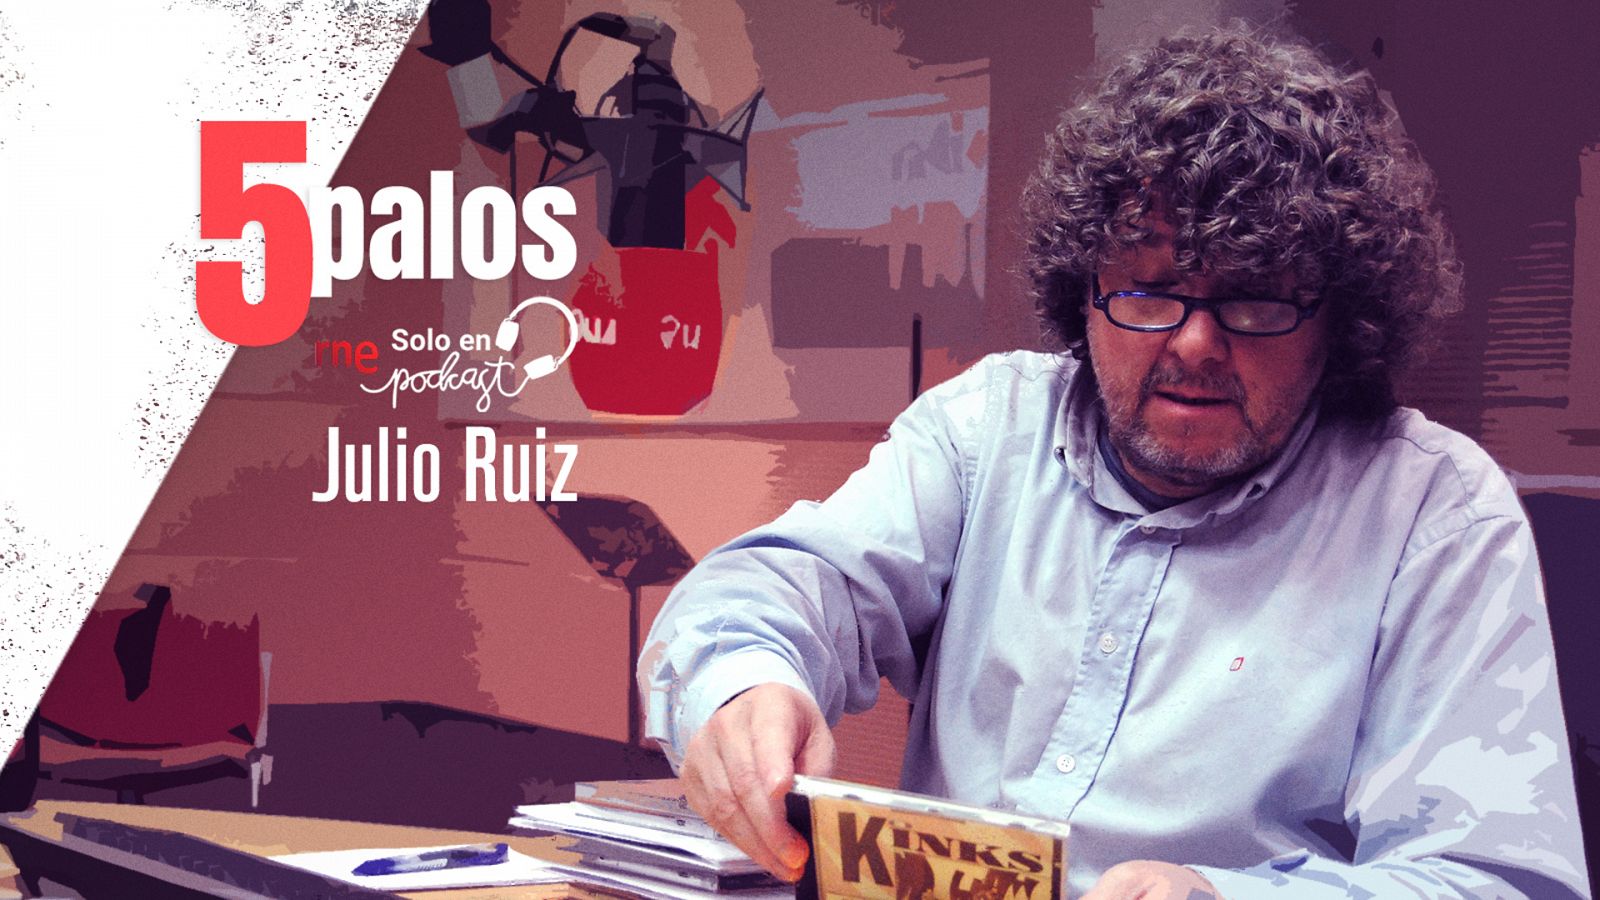 La escena, la política, el deporte, los medios y la música, los '5 palos' de Julio Ruiz.